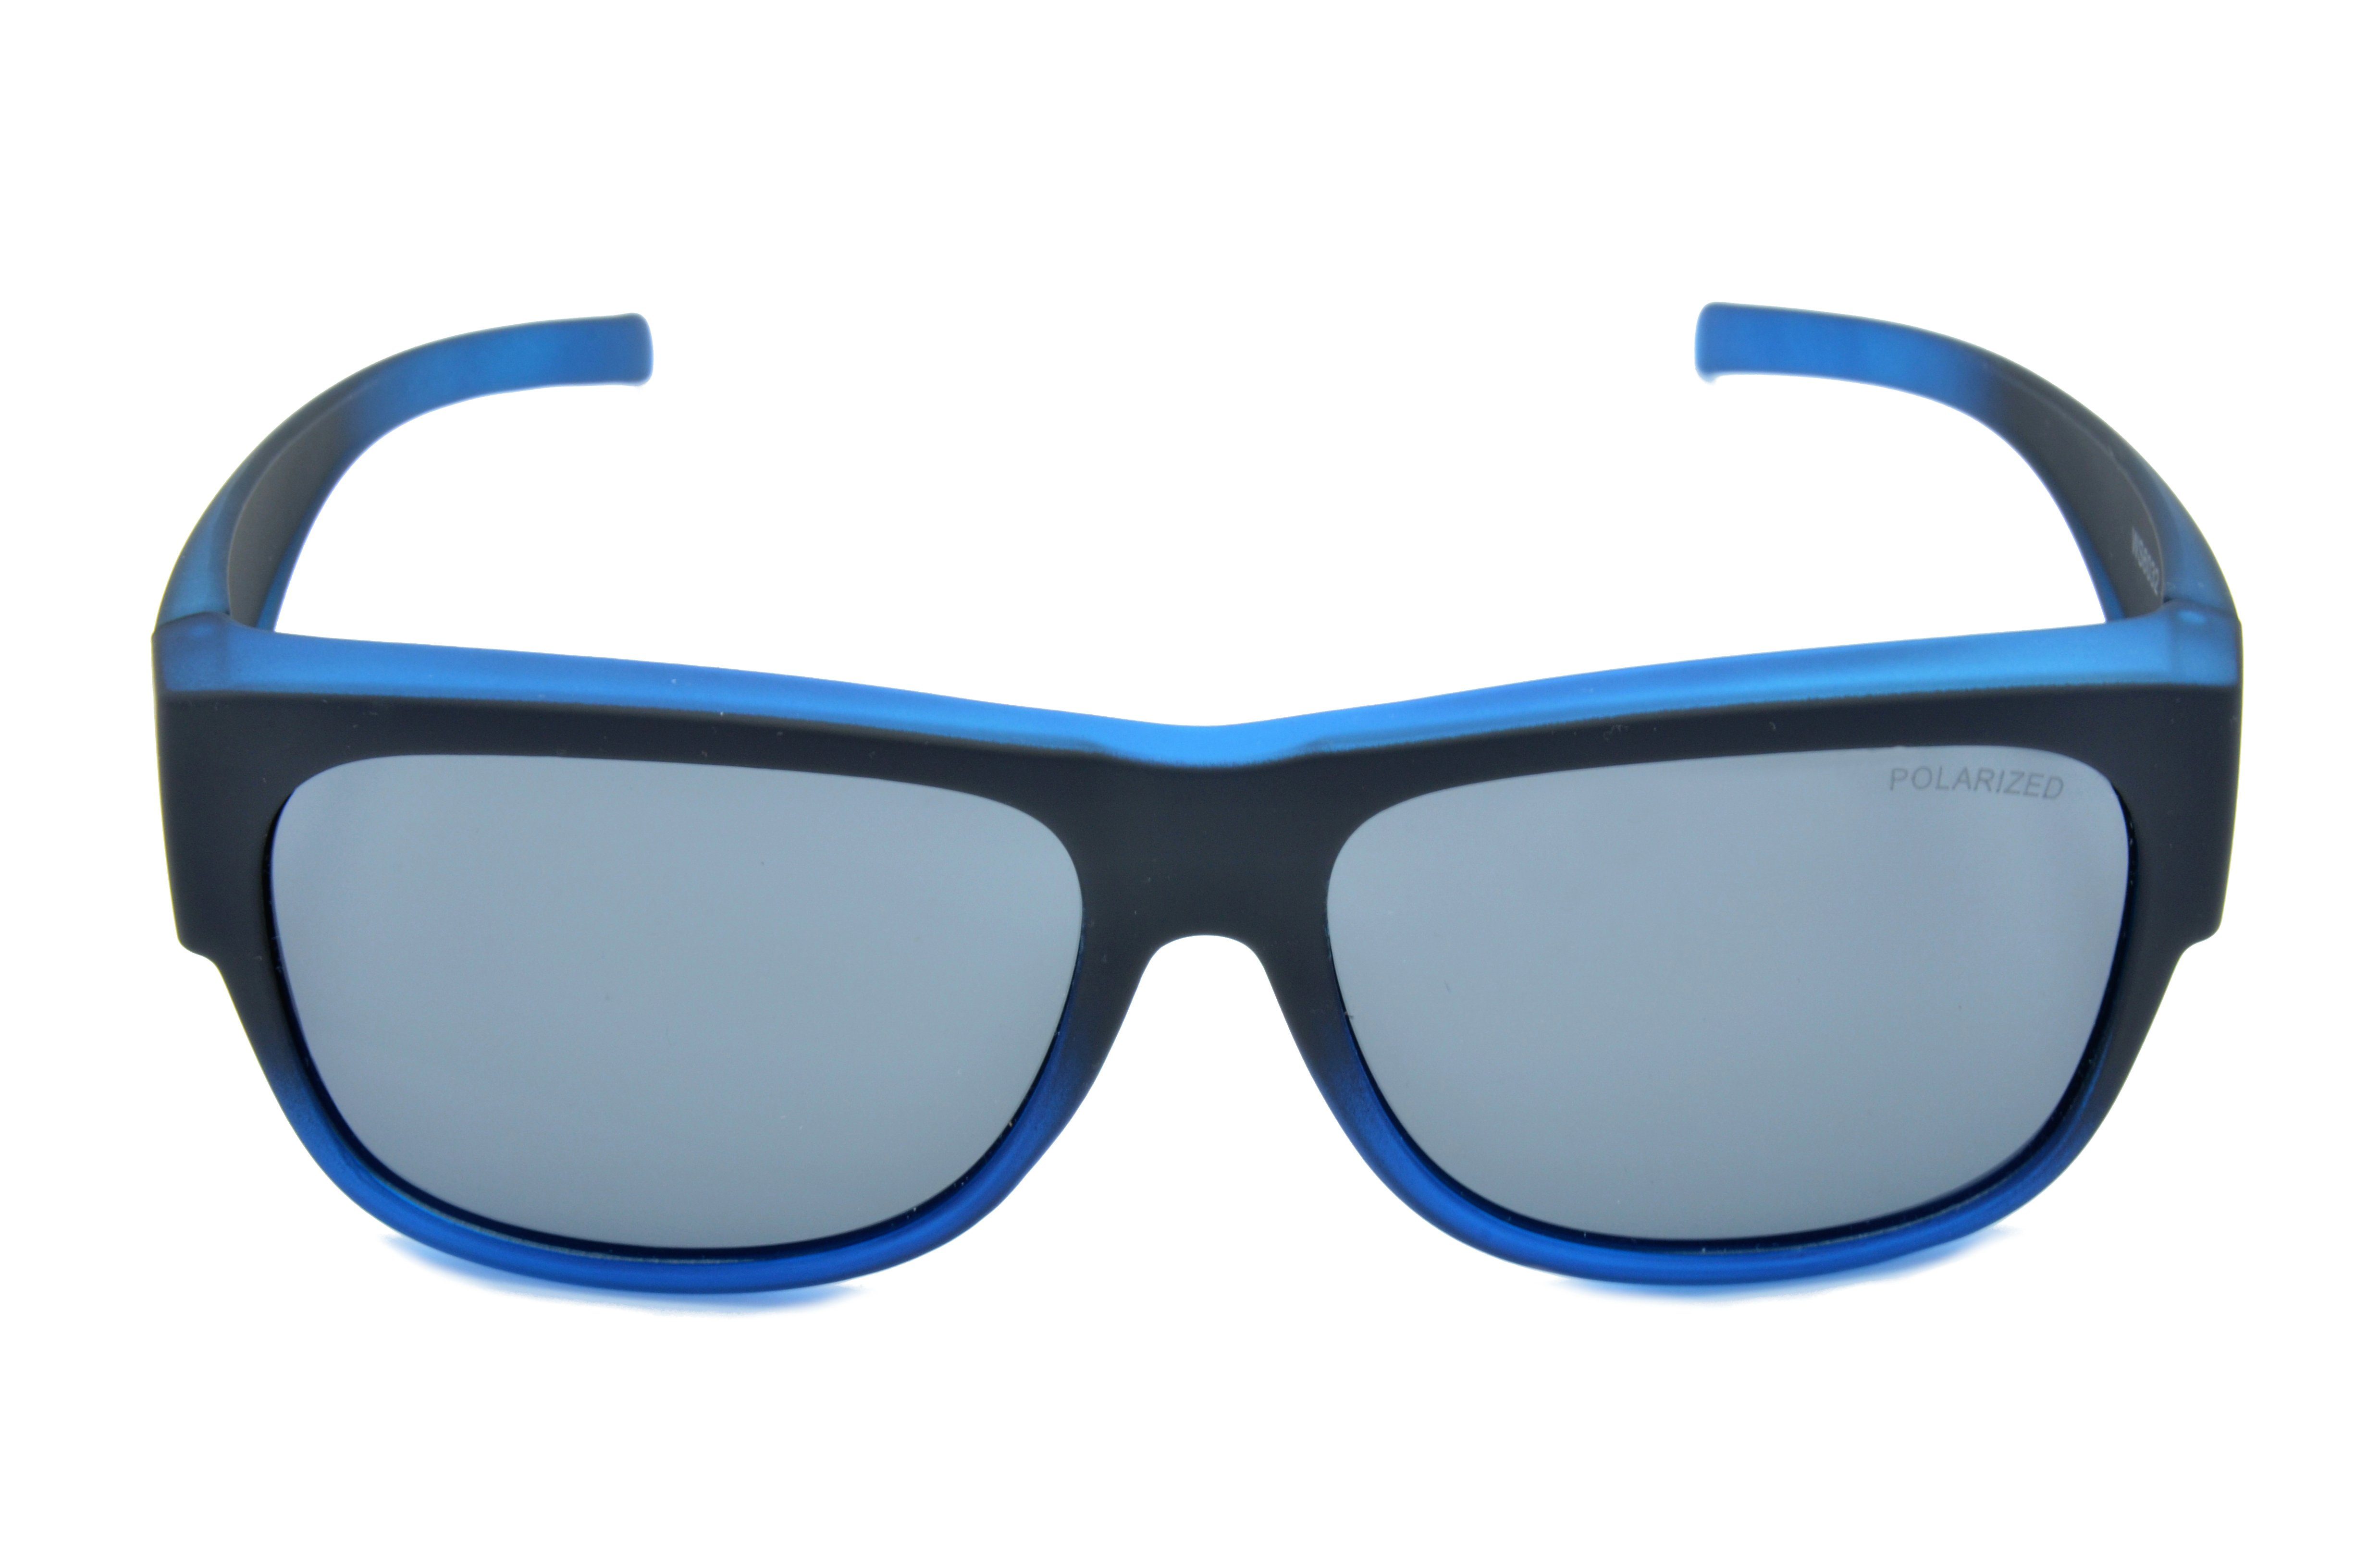 Rubbertouchbeschichtung Damen Sonnenbrille Sportbrille Sportbrille Überbrille unisex, blau, beere, G15, Passform, schwarz WS6022 universelle Gamswild Herren,